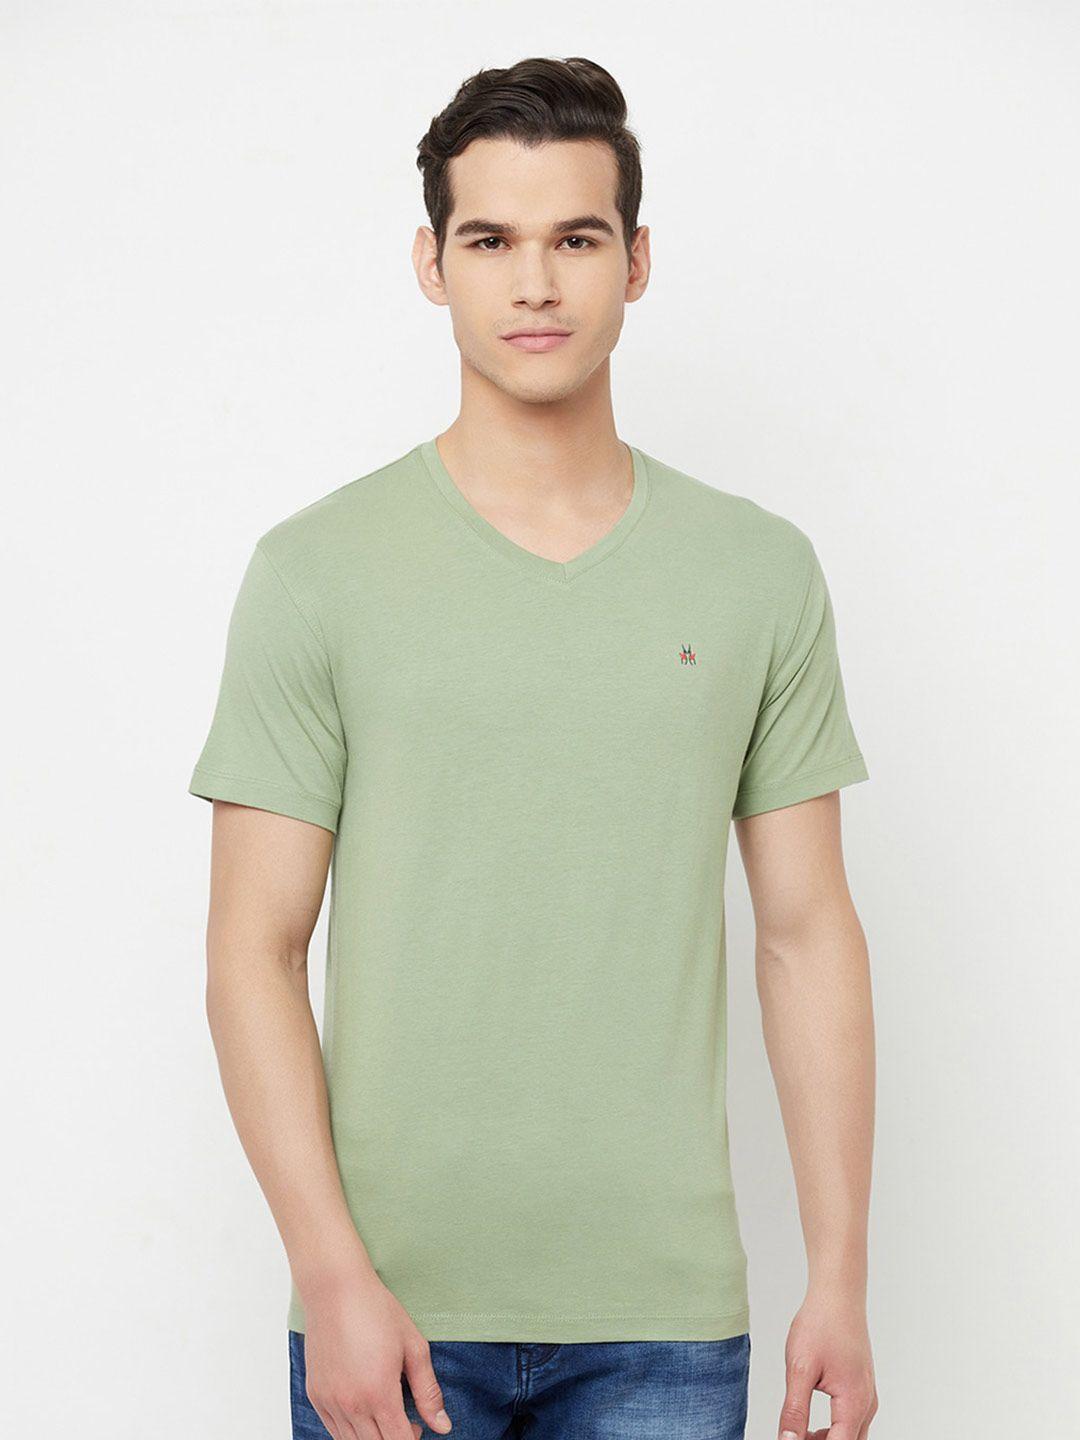 crimsoune club men olive green v-neck slim fit outdoor t-shirt